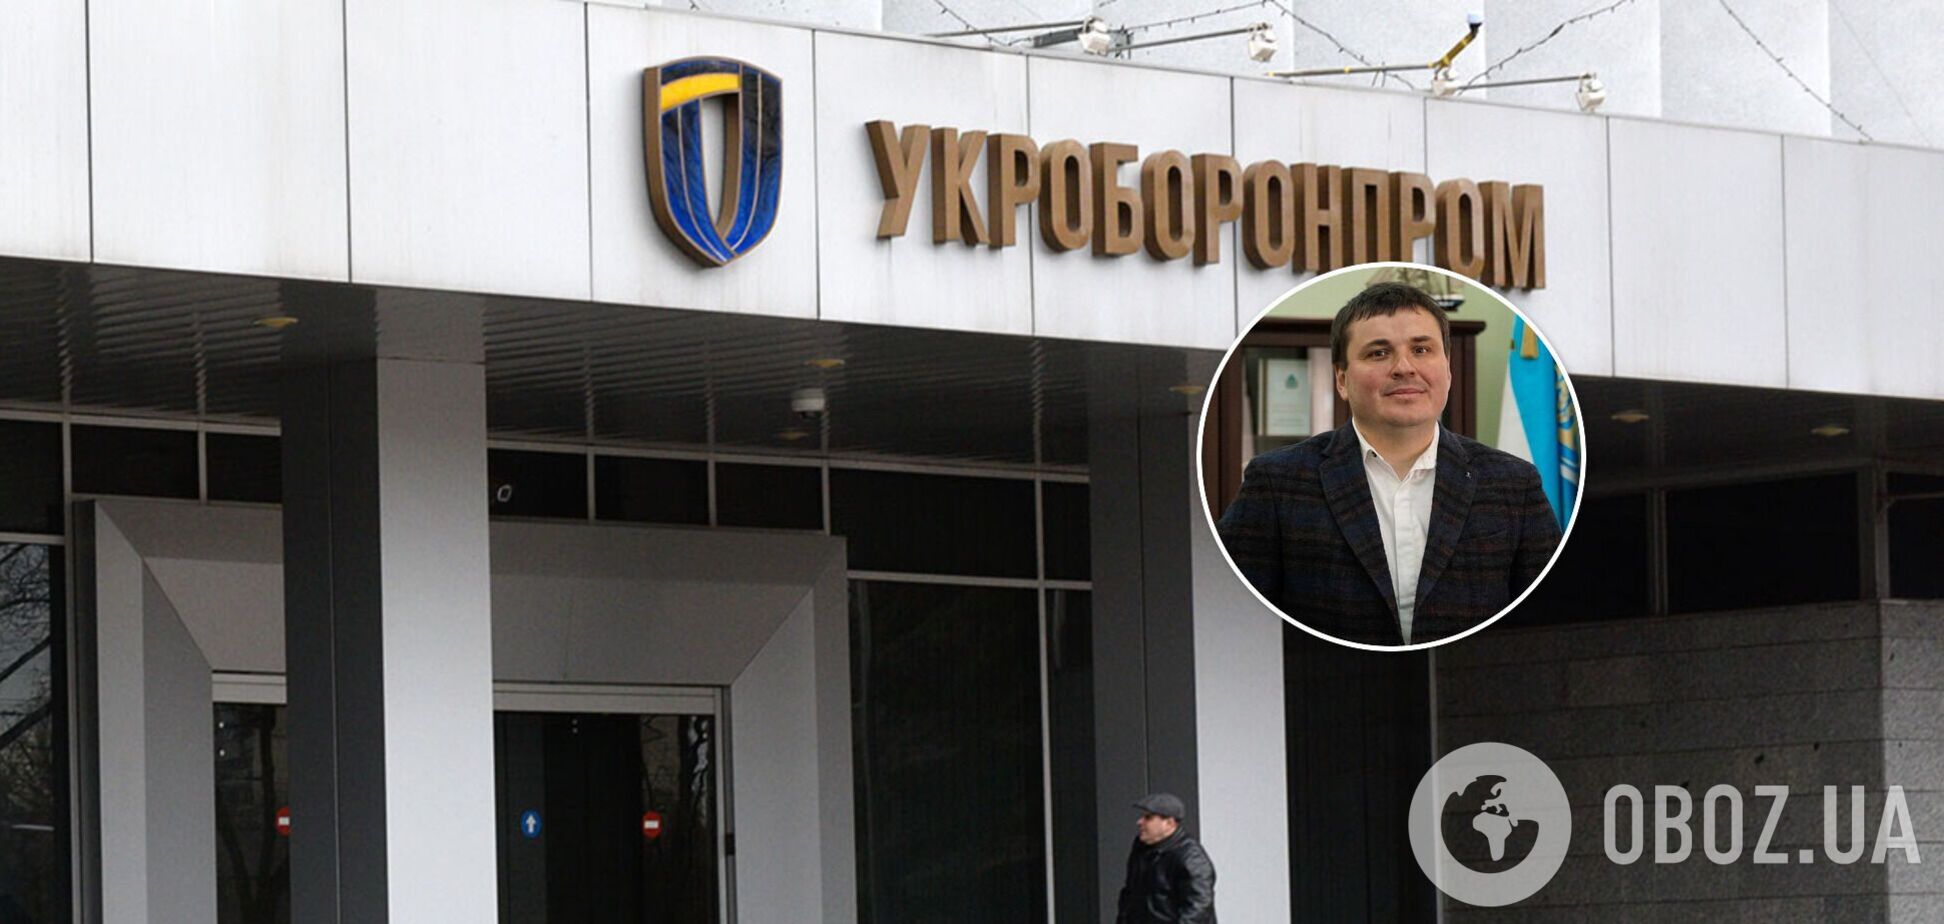 Новопризначений керівник 'Укроборонпрому' в перший же місяць отримав сотні тисяч гривень премії